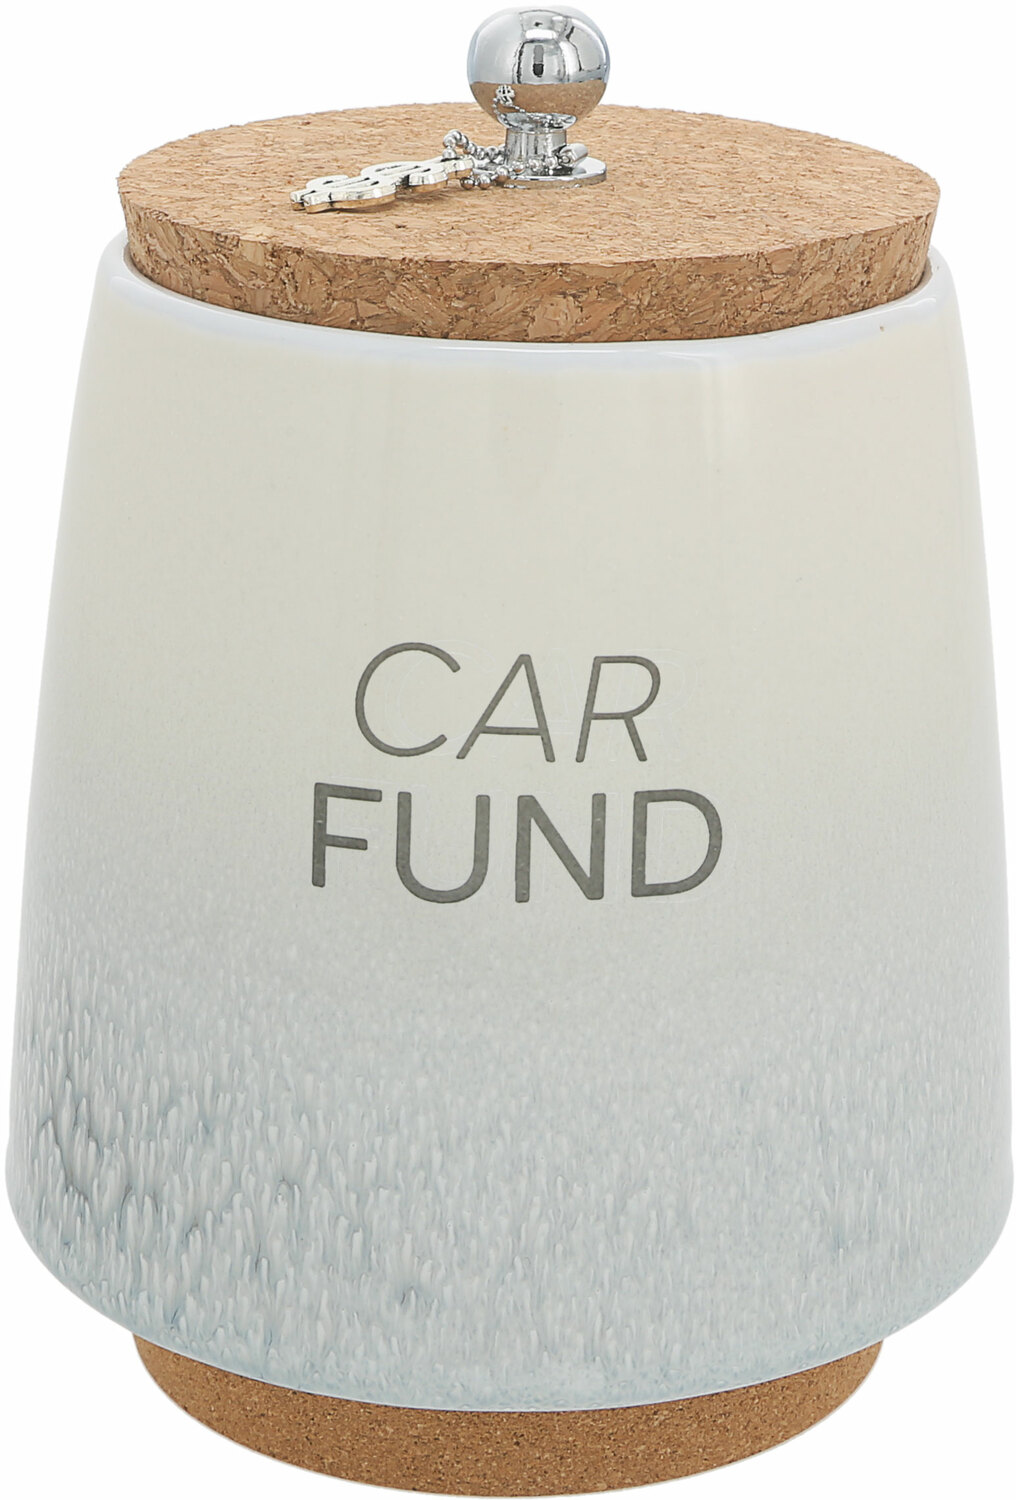 Car by So Much Fun-d - Car - 6.5" Ceramic Savings Bank